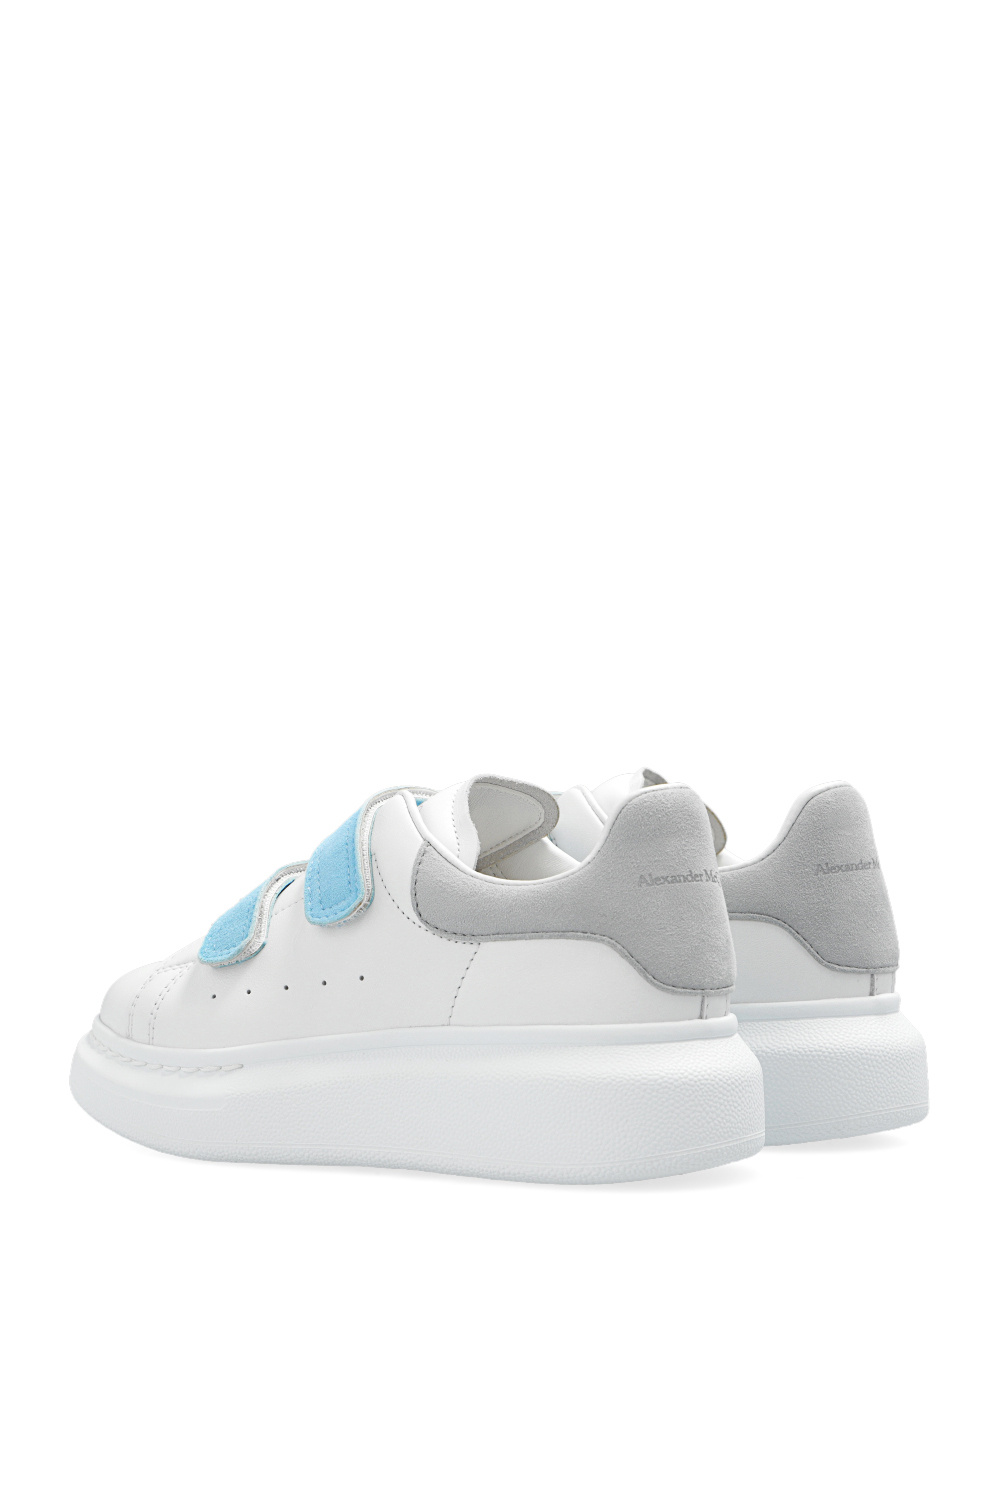 Alexander McQueen Sneaker Smog Blue 553770 9076 Sneakers with logo